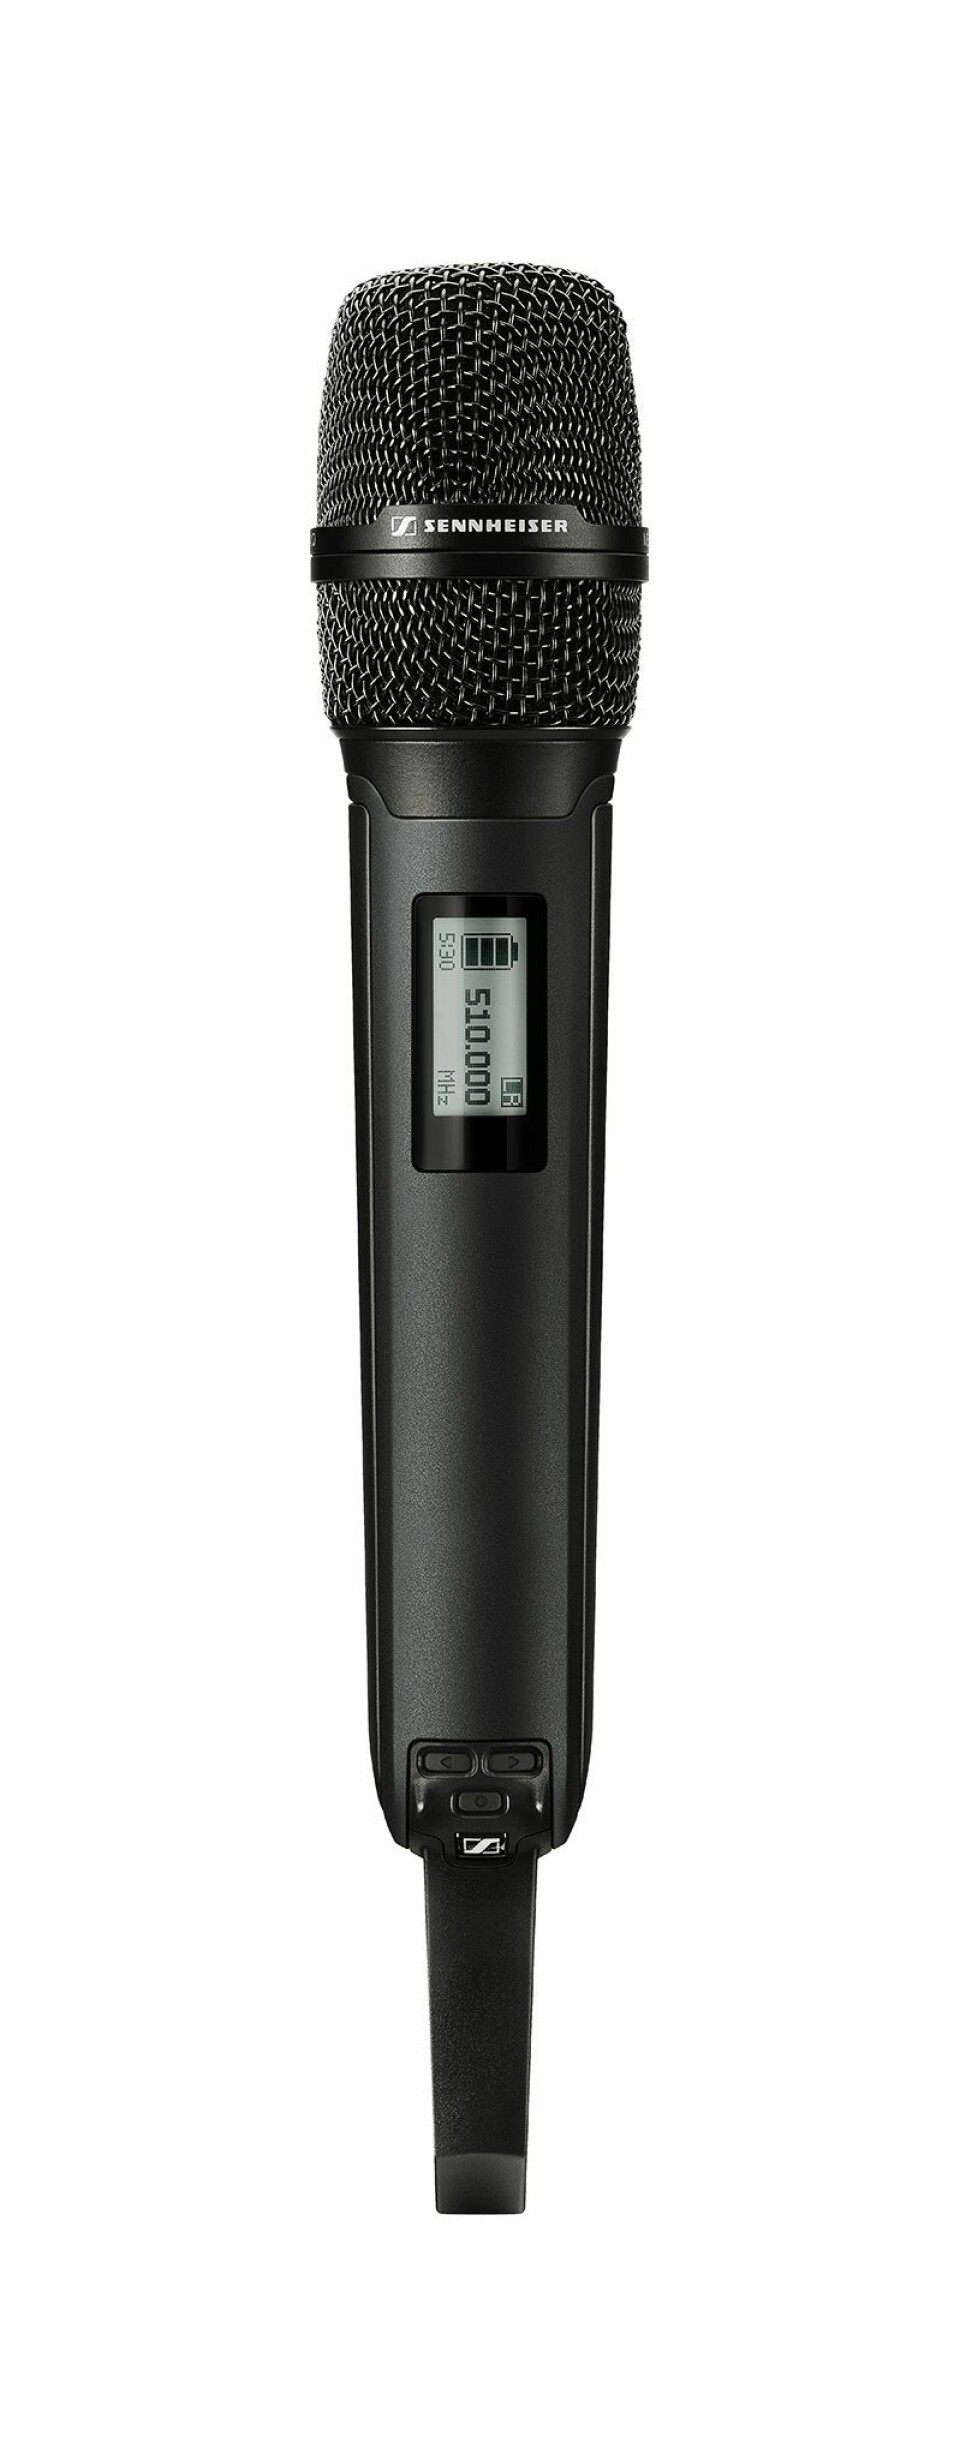 68 håndholdte mikrofoner av modellen SKM 6000, med MD 9235-kapsel for artistene, er i bruk under ESC. Foto: Sennheiser